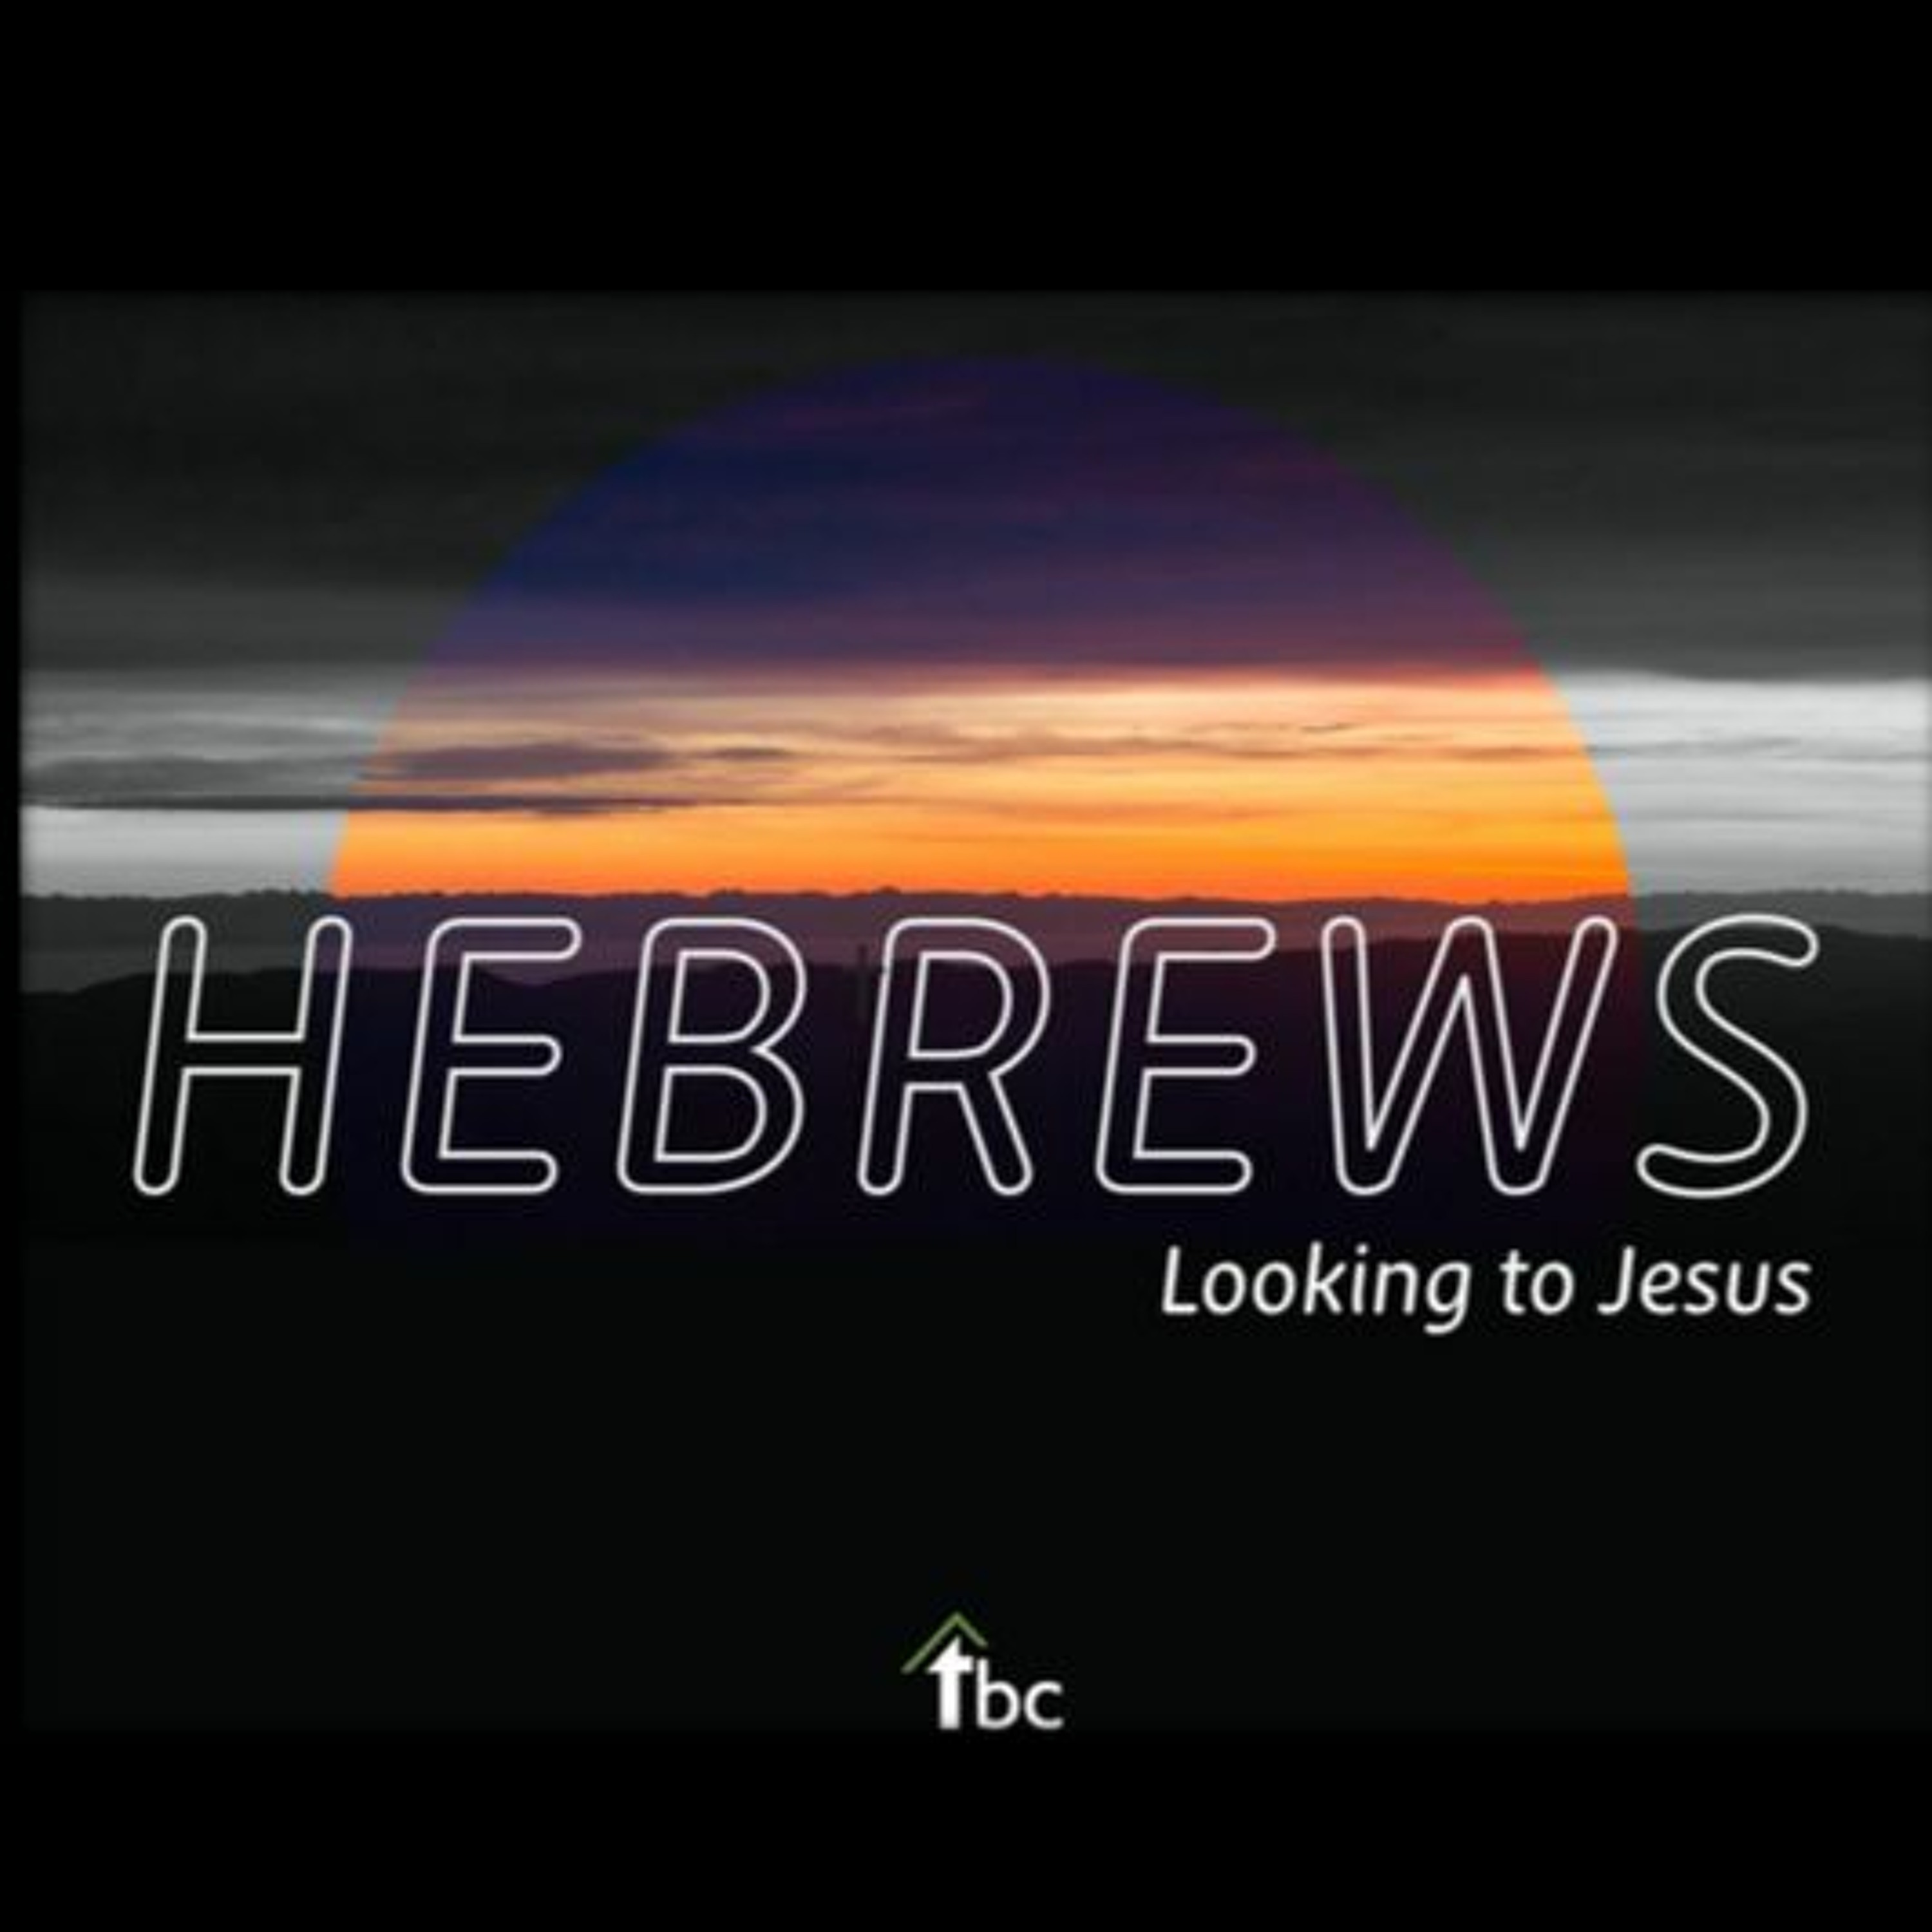 Enter the Rest (Hebrews 4:1-13)